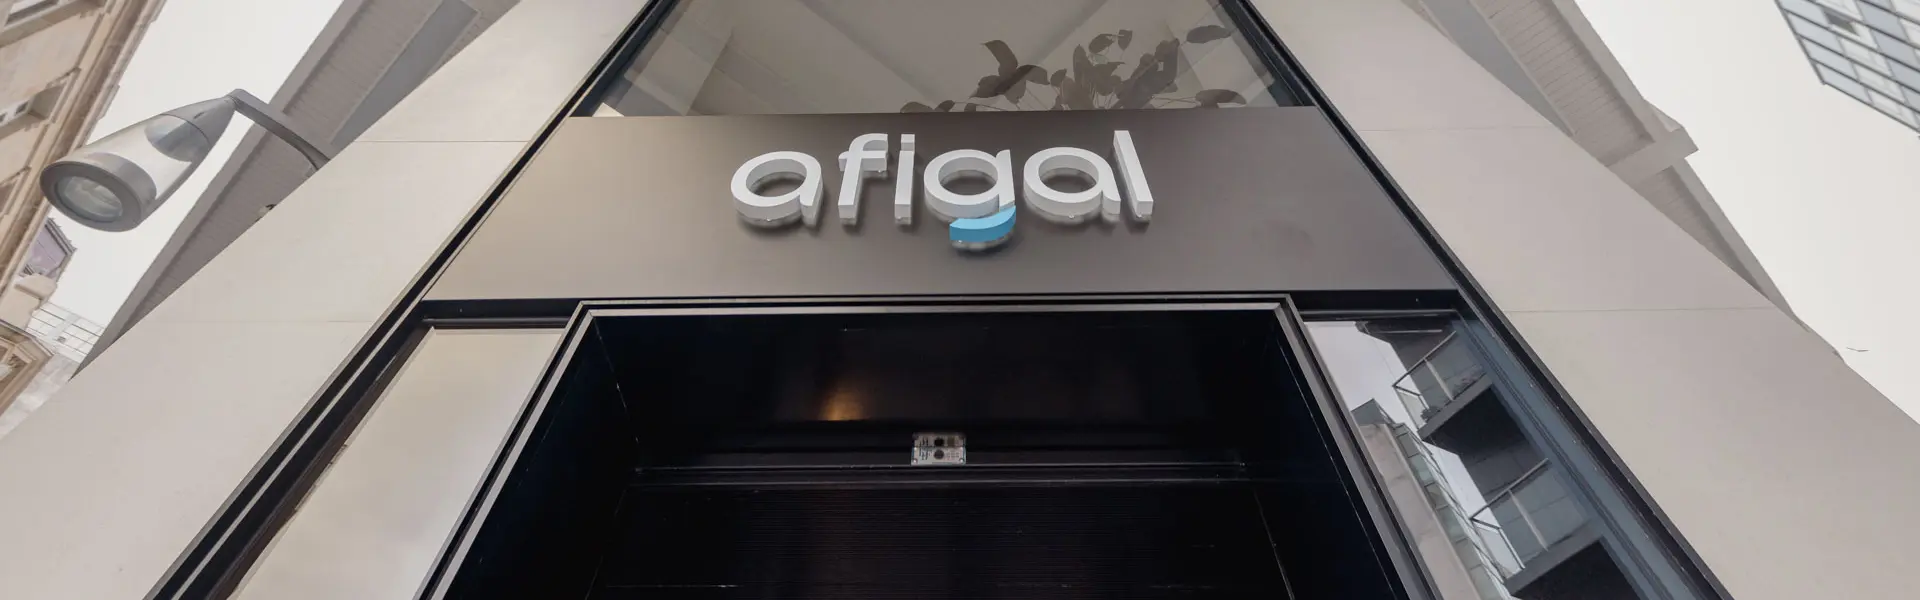 Afigal incrementa un 45 su actividad formalizando 569 avales por un importe de 53 millones de euros ultimas noticias